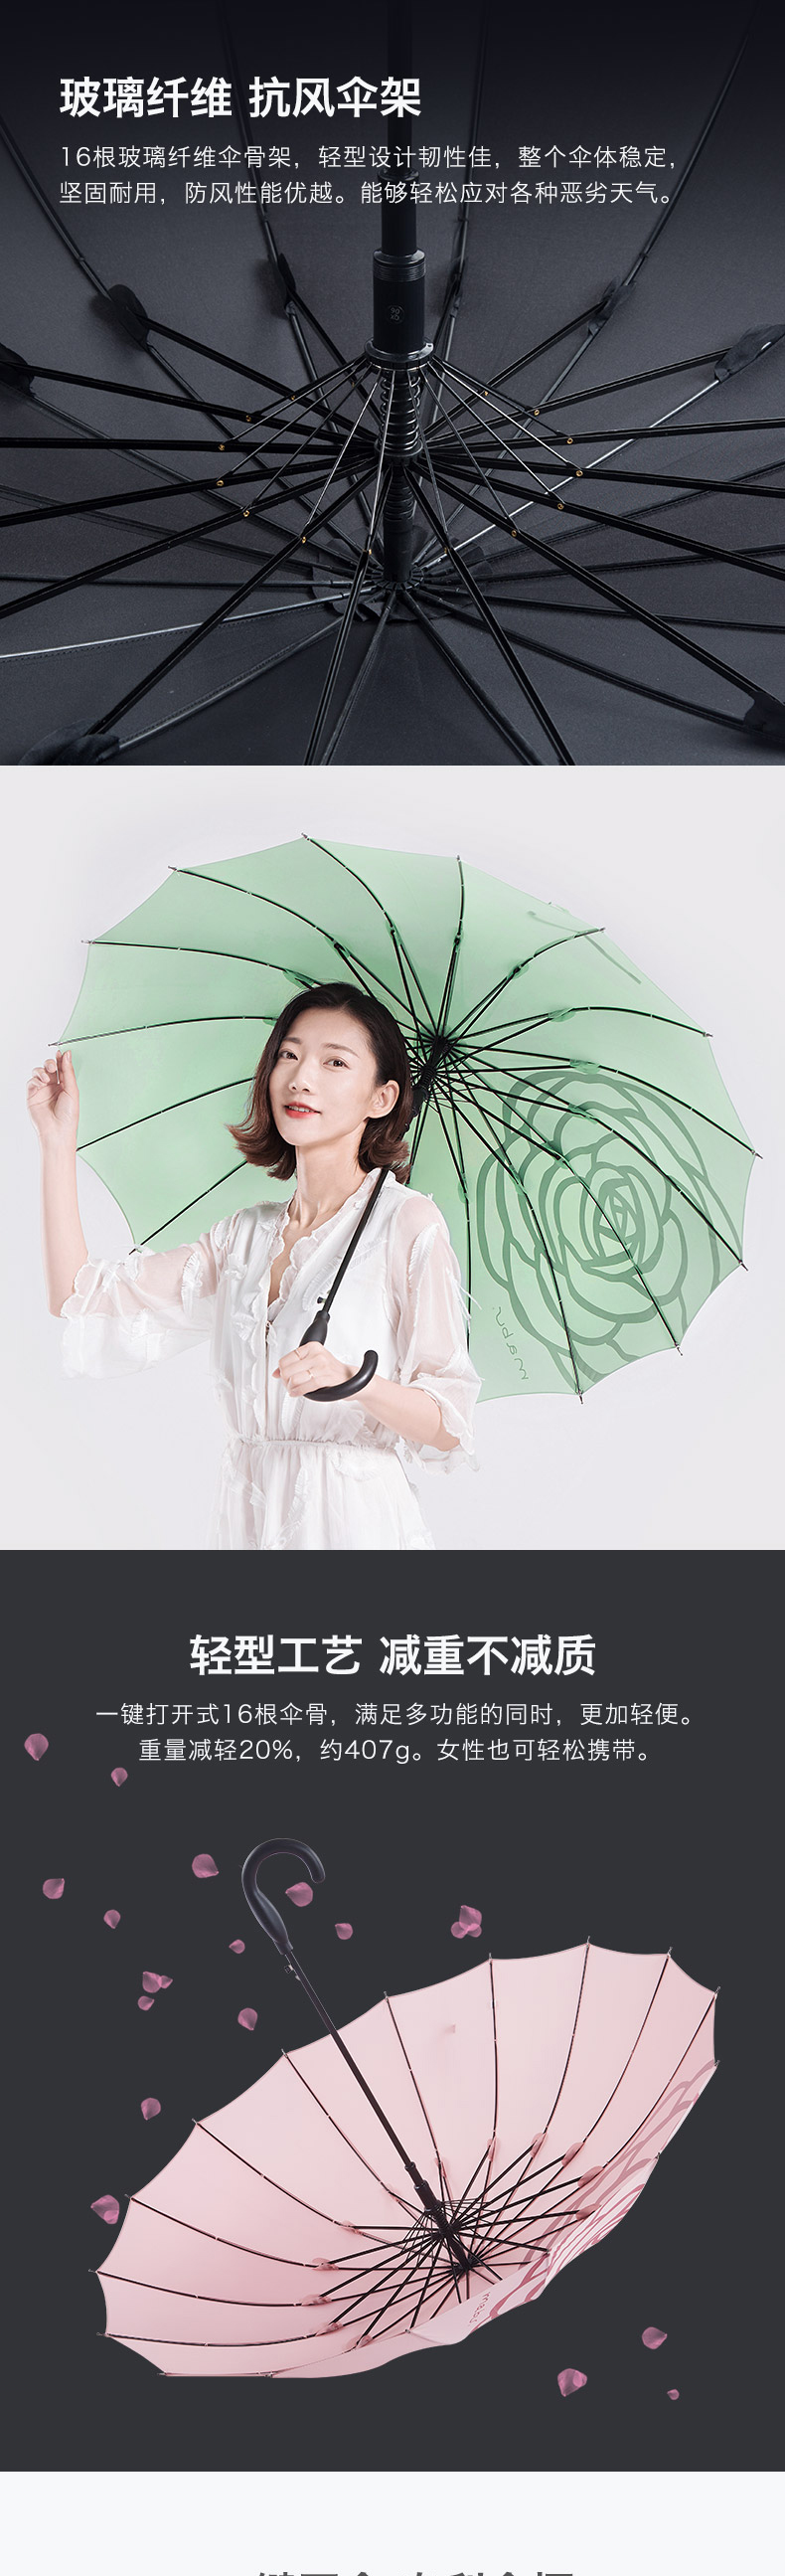 日本人气雨伞品牌，Mabu 16根骨轻便半自动长柄晴雨伞 2色 38元包邮（双重优惠） 买手党-买手聚集的地方